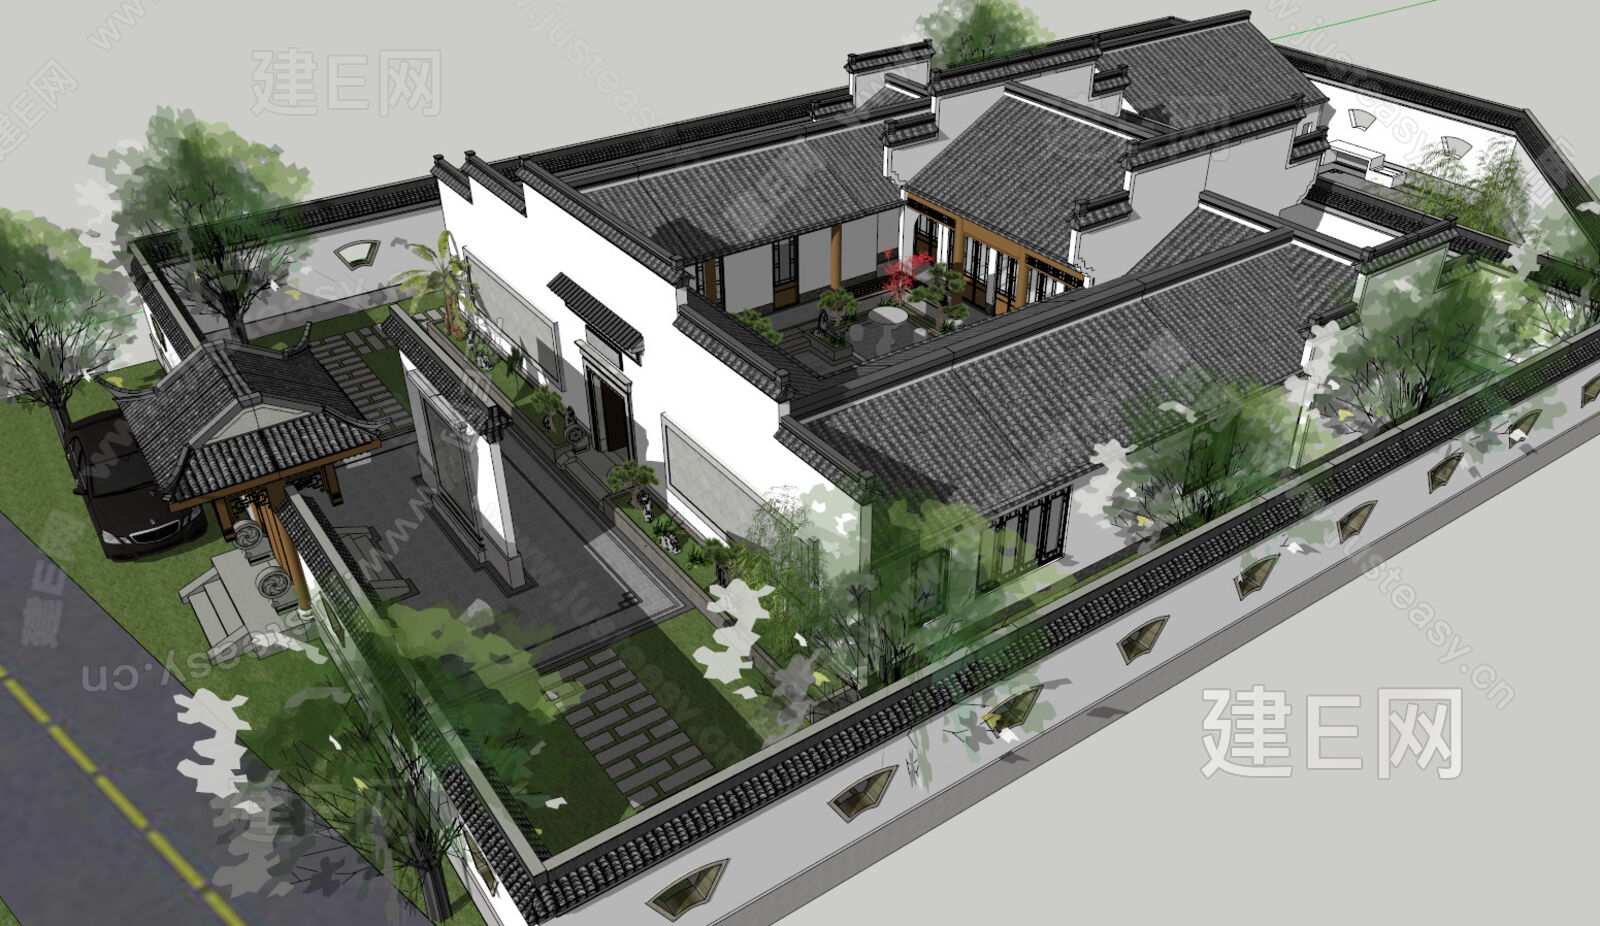 新中式徽派自建房四合院sketchup模型